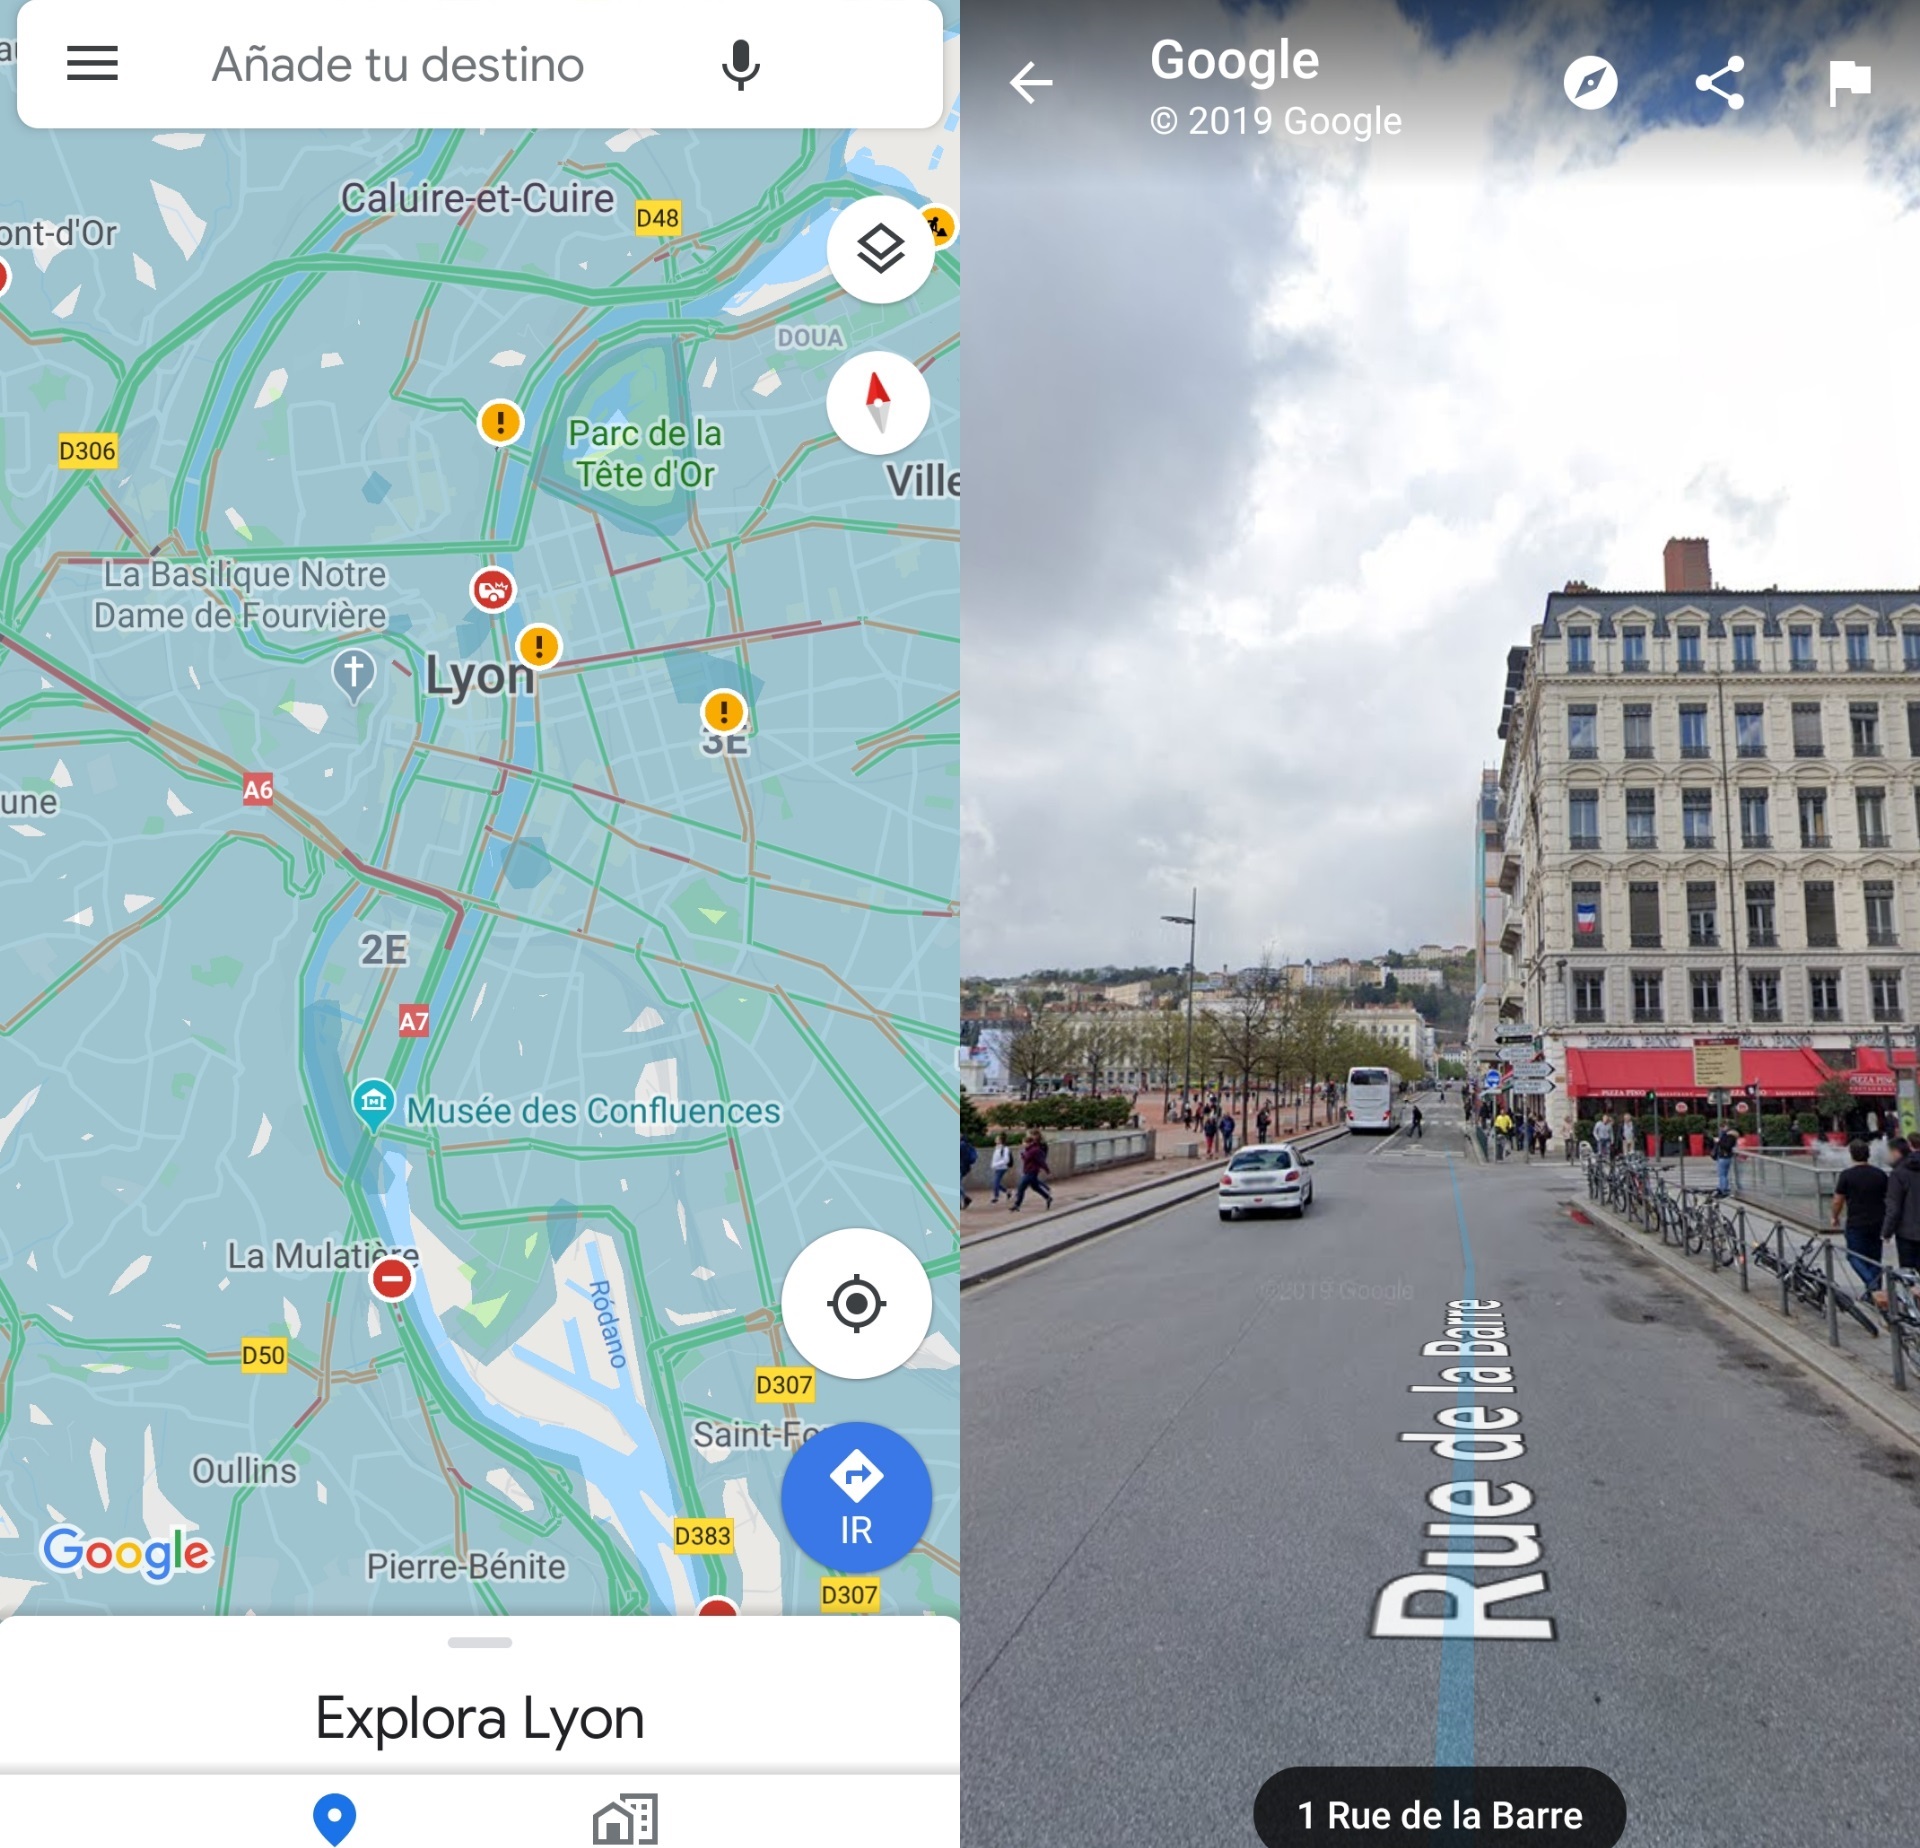 عرض الشوارع في خرائط جوجل